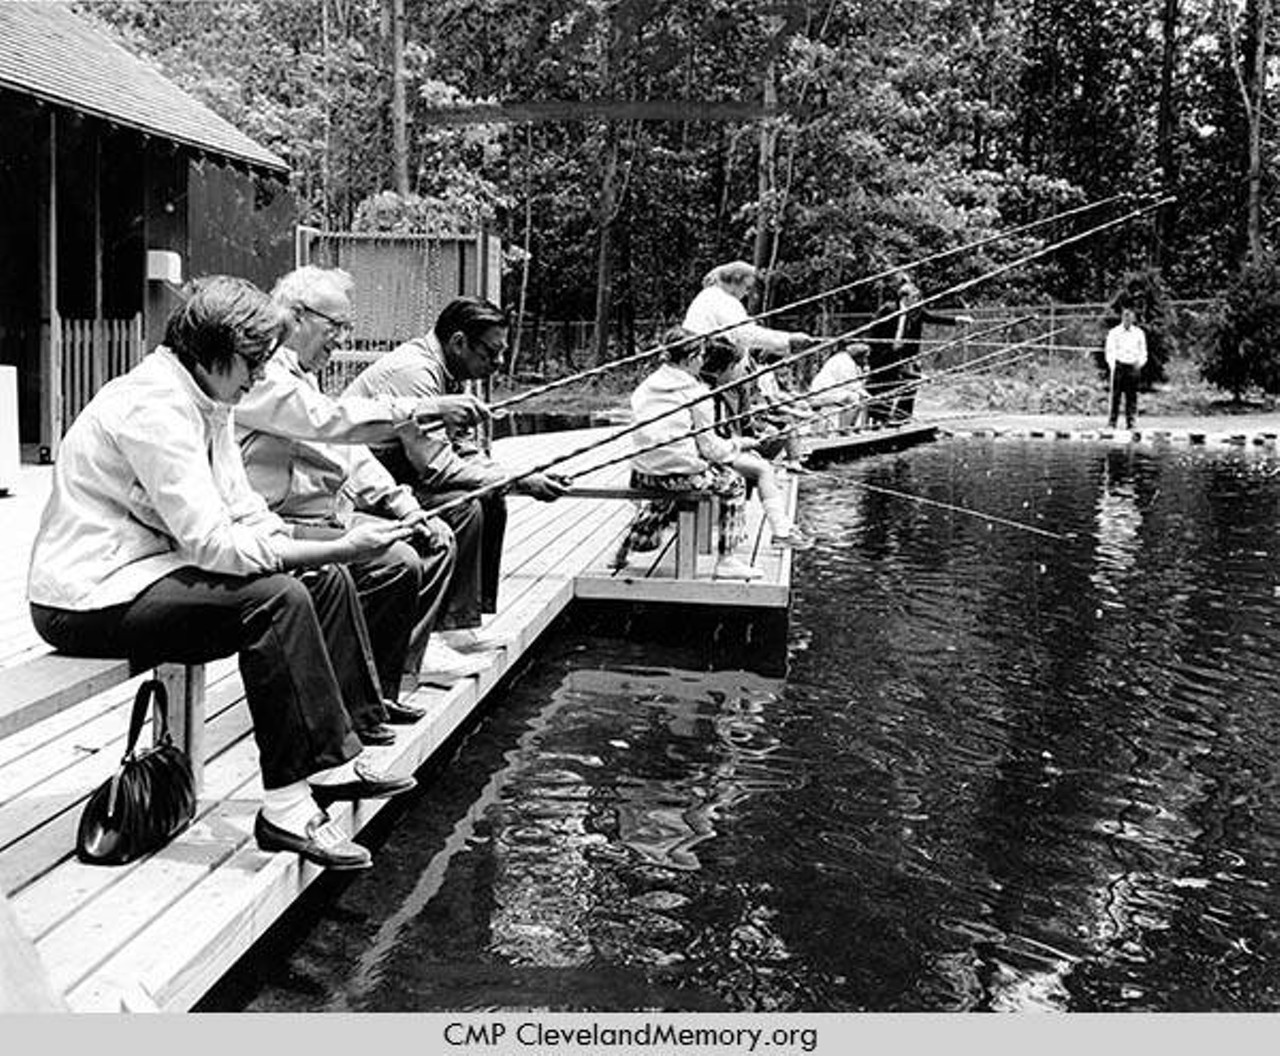  Fishing, 1970 